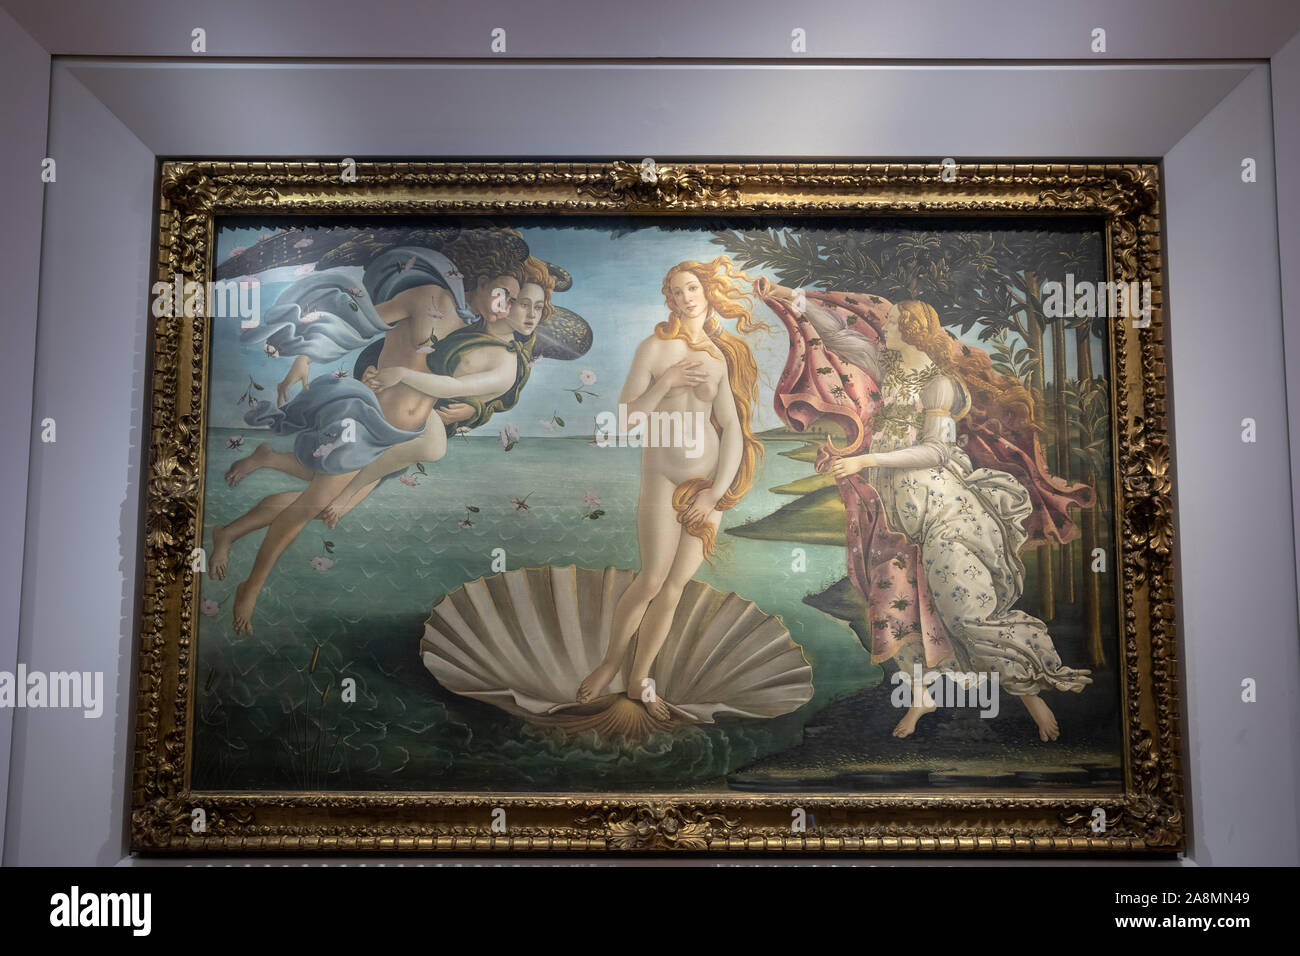 Florence, Italie - 26 juin 2018 : Photo de Nascita di Venere (La Naissance de Vénus) est une peinture de l'artiste italien Sandro Botticelli, photo Banque D'Images